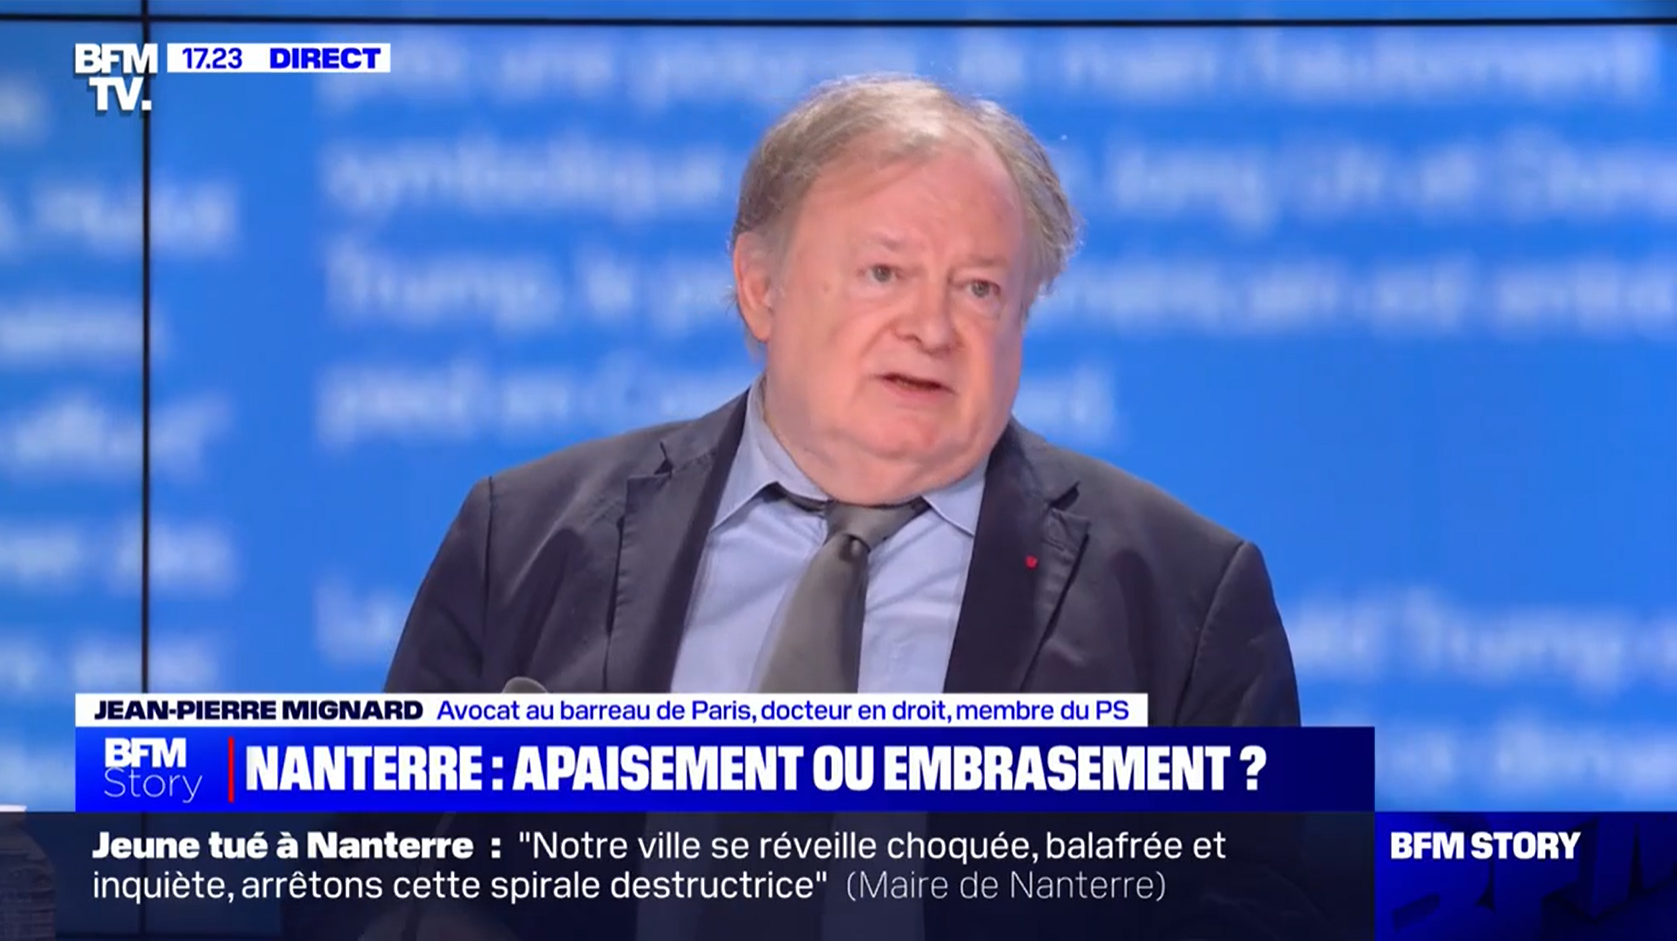 Jean-Pierre Mignard sur BFM TV : « Jeune tué à Nanterre, apaisement ou embrasement  ? »